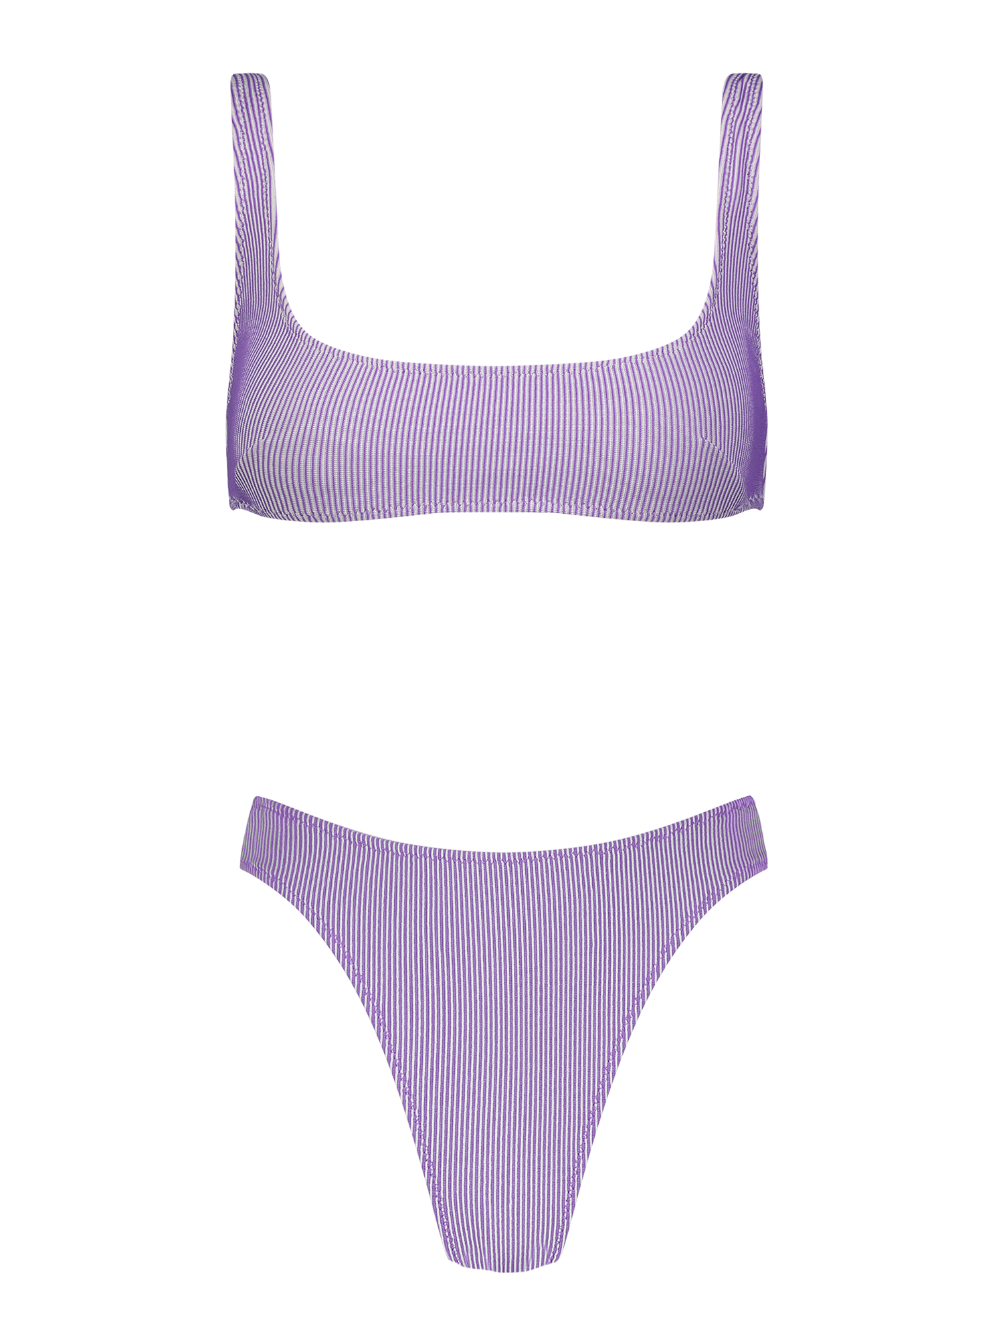 Anna Lavender Rib Knit High-Cut Bikini